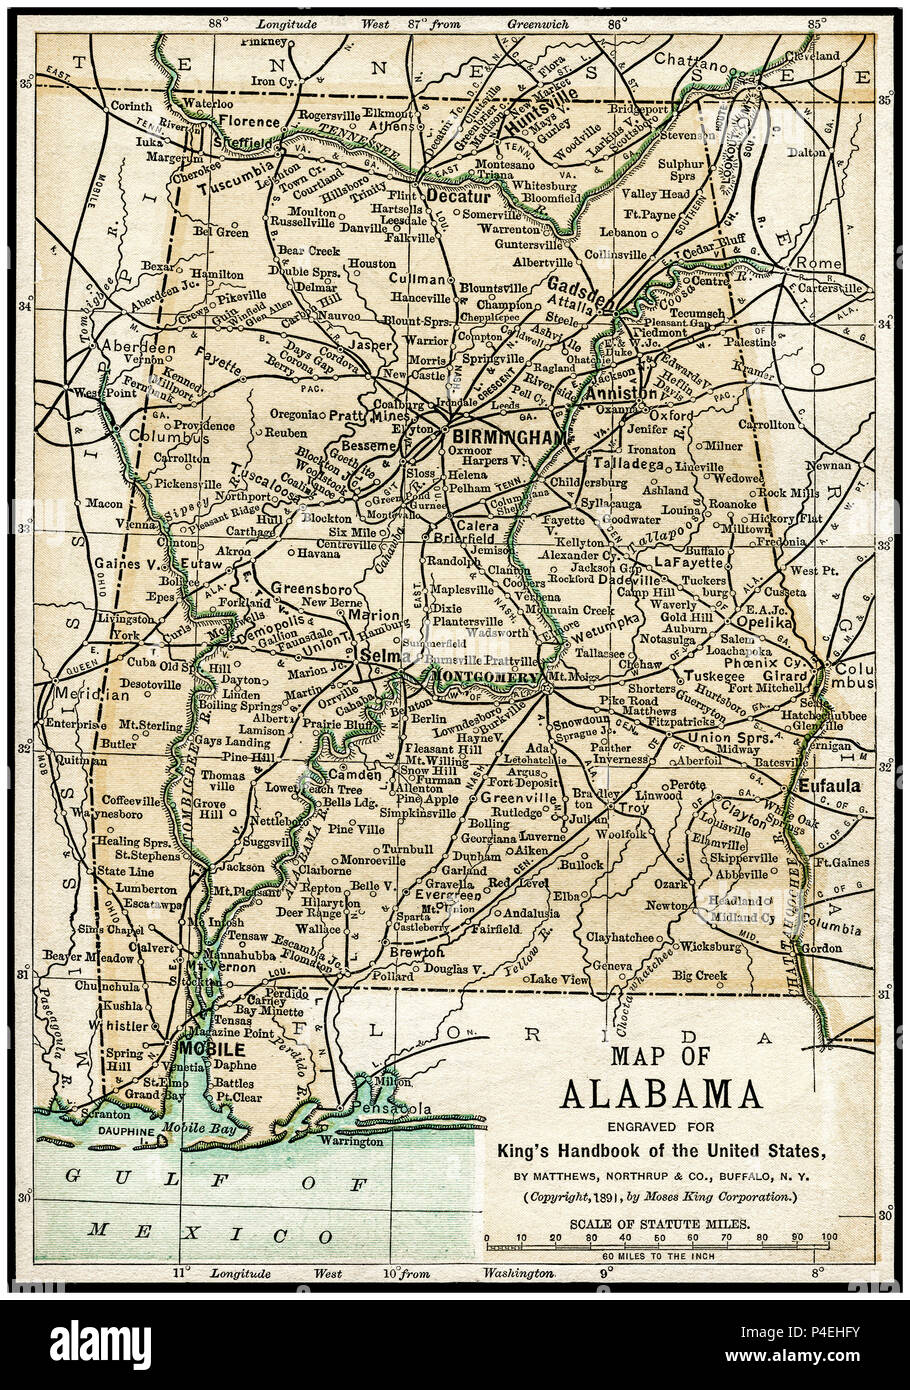 In Alabama mappa Antichi 1891: Mappa di Alabama da un 1891 Guida. Mappa è da una guida per gli Stati Uniti da parte di Mosè re: "La mano del re-libro degli Stati Uniti". Data di pubblicazione: 1891. Mosè King (1853 1909) era un americano ed editore di libri di viaggio. Foto Stock